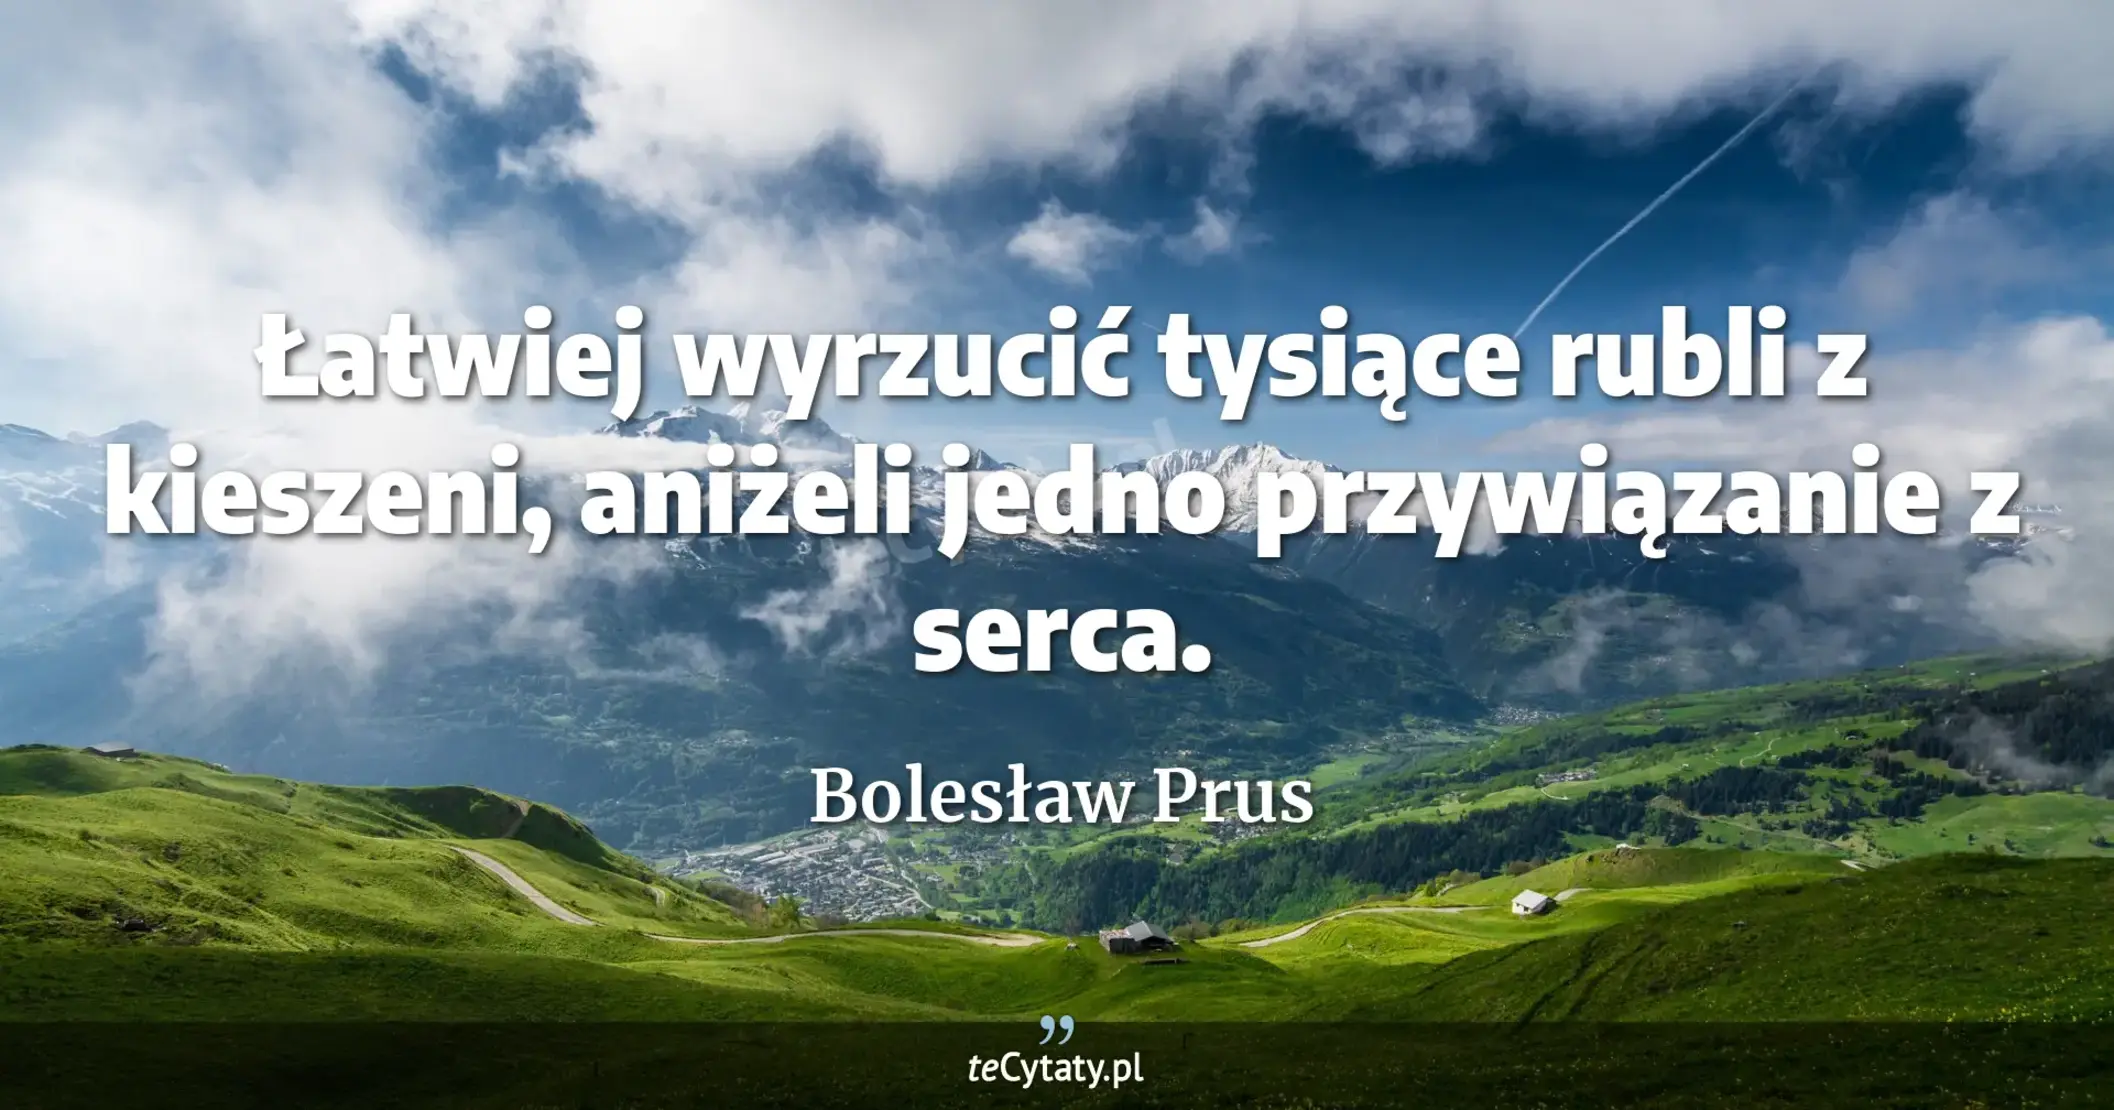 Łatwiej wyrzucić tysiące rubli z kieszeni, aniżeli jedno przywiązanie z serca. - Bolesław Prus